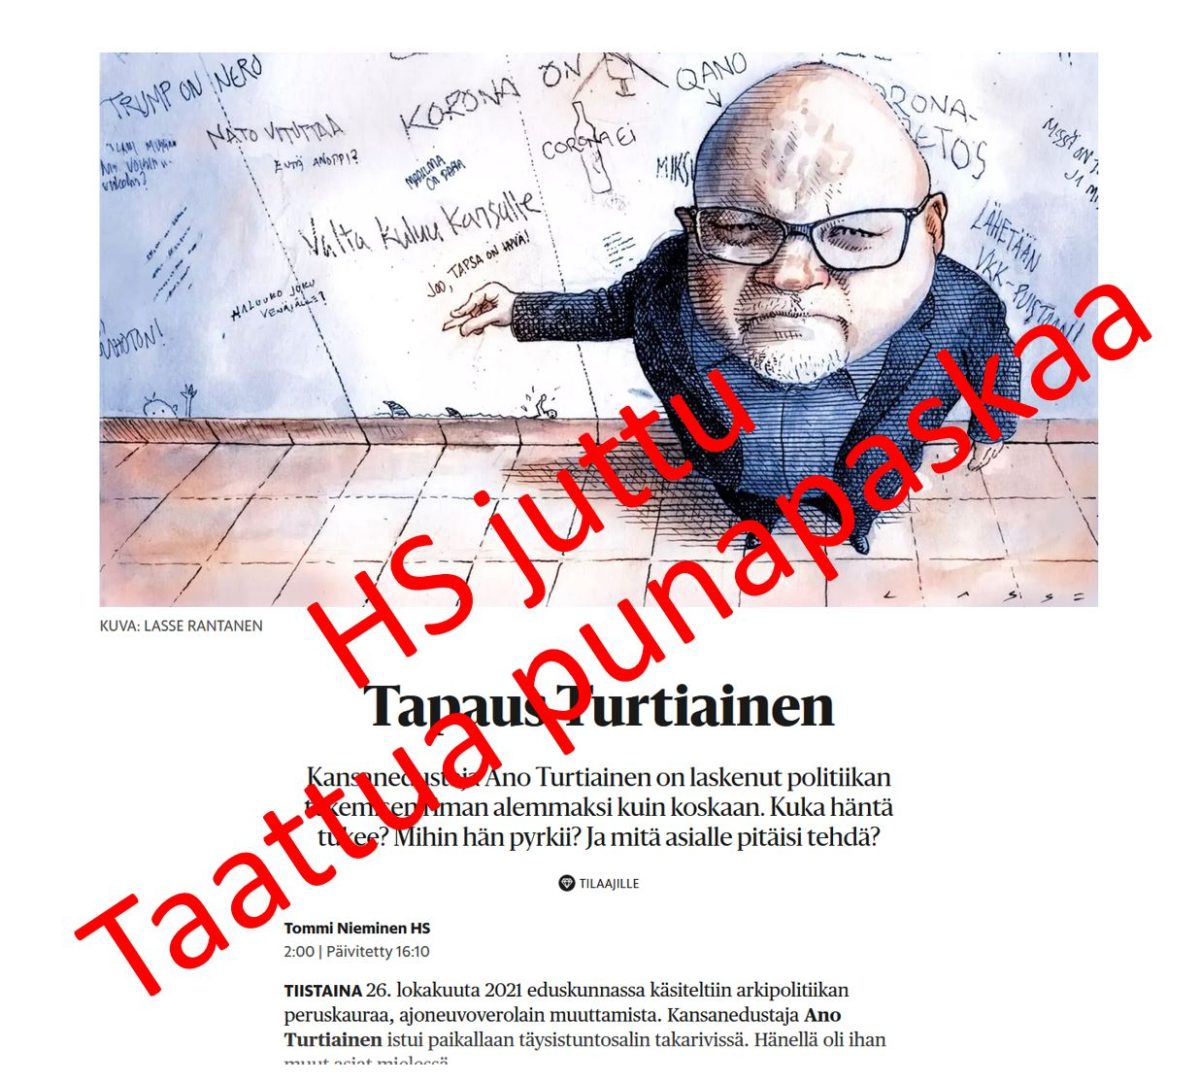 Helsingin Sanomien parjauskirjoitus VKK:sta ja Ano Turtiaisesta – Jutun analyysi